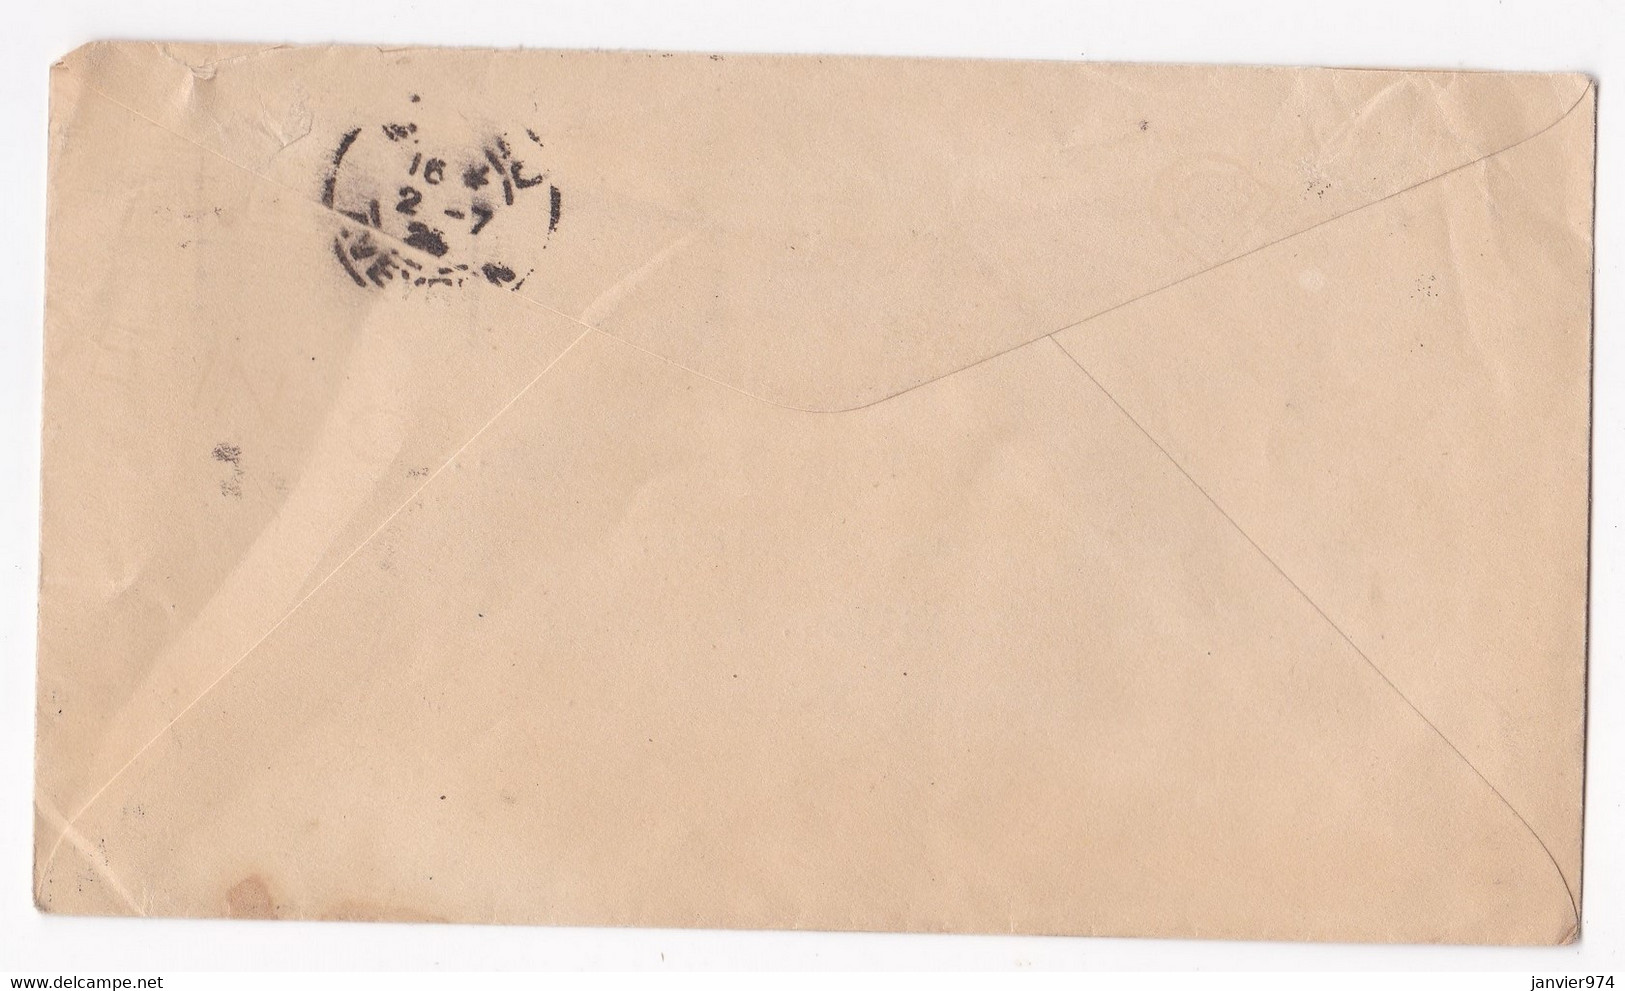 Enveloppe 1948 . Toronto Canada Pour M. Jules Plagnes à Millau Aveyron - Lettres & Documents